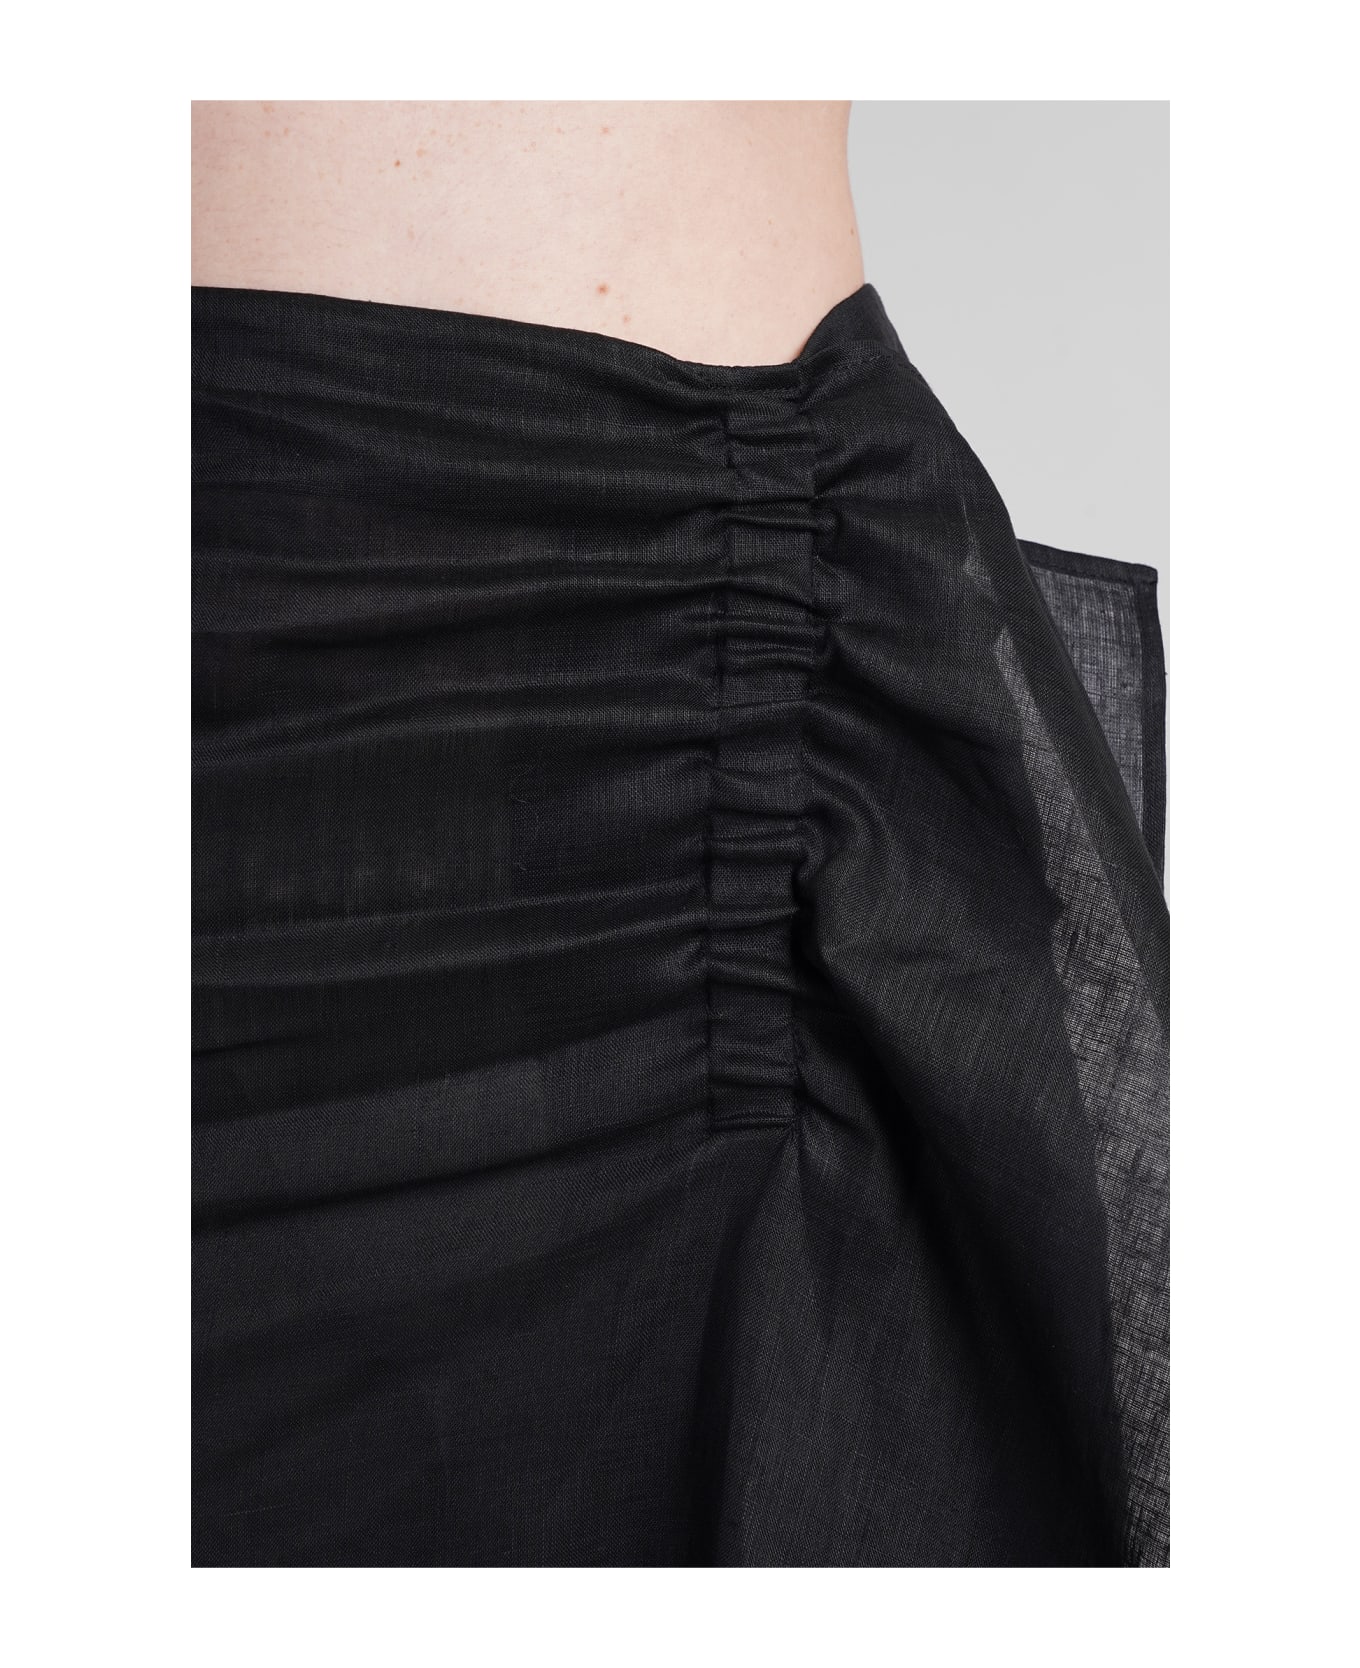 Holy Caftan Ginger Py Skirt In Black Linen - black スカート